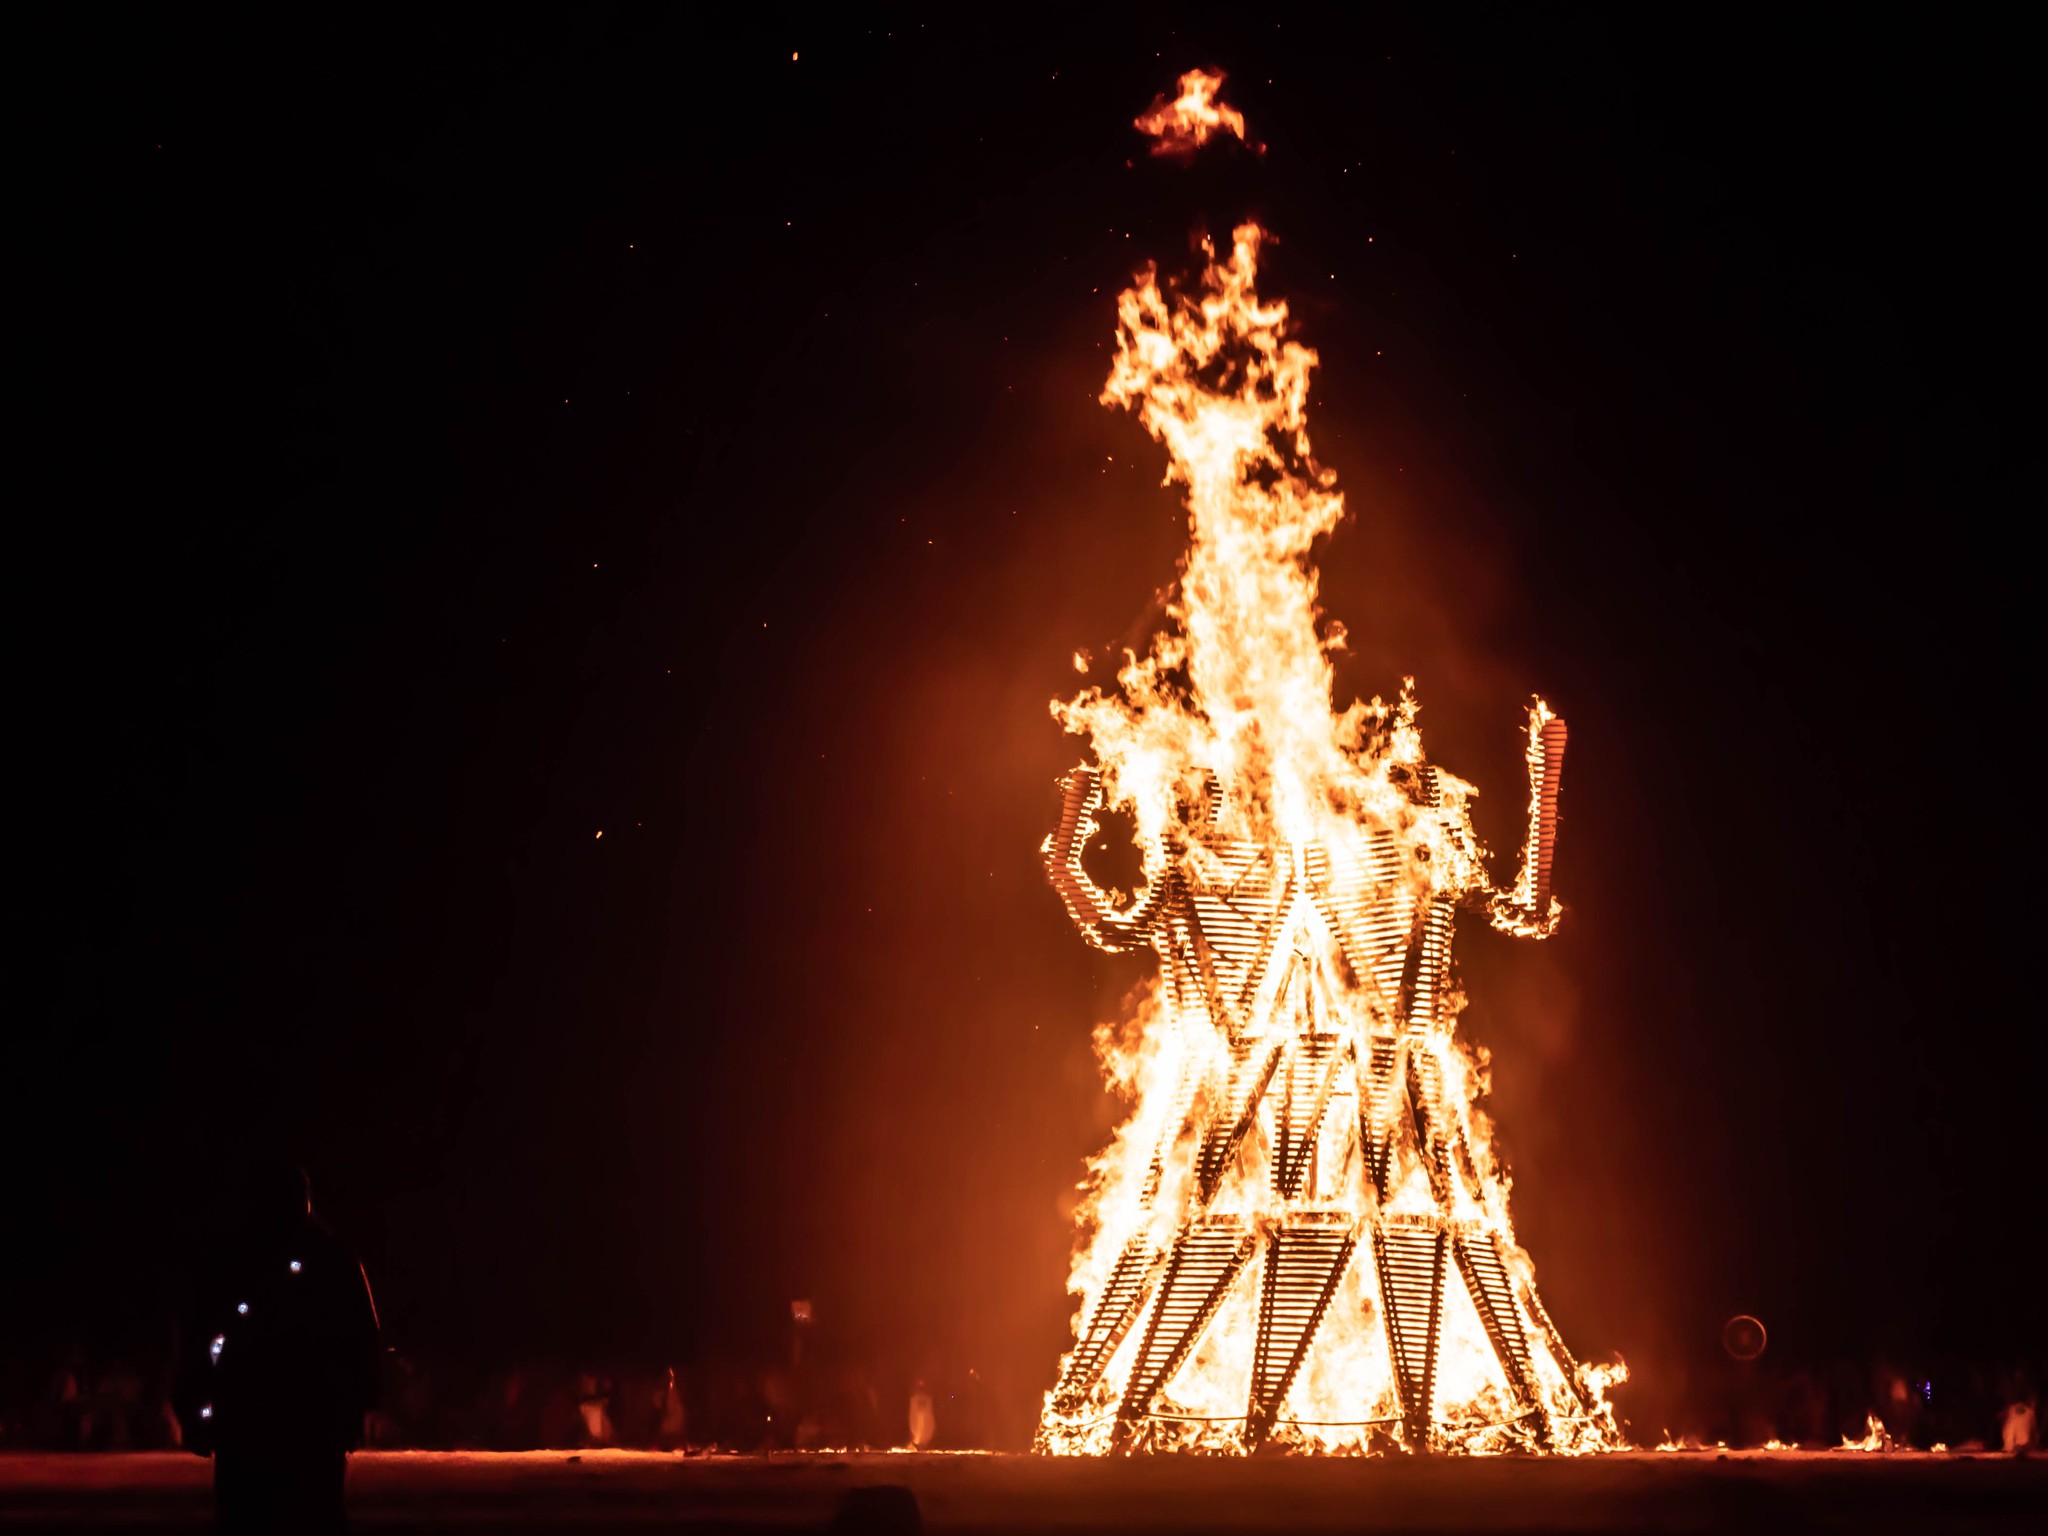 Das Brennritual ist ein spektakulärer Anblick | Fotocredits: David Gwynne-Evans